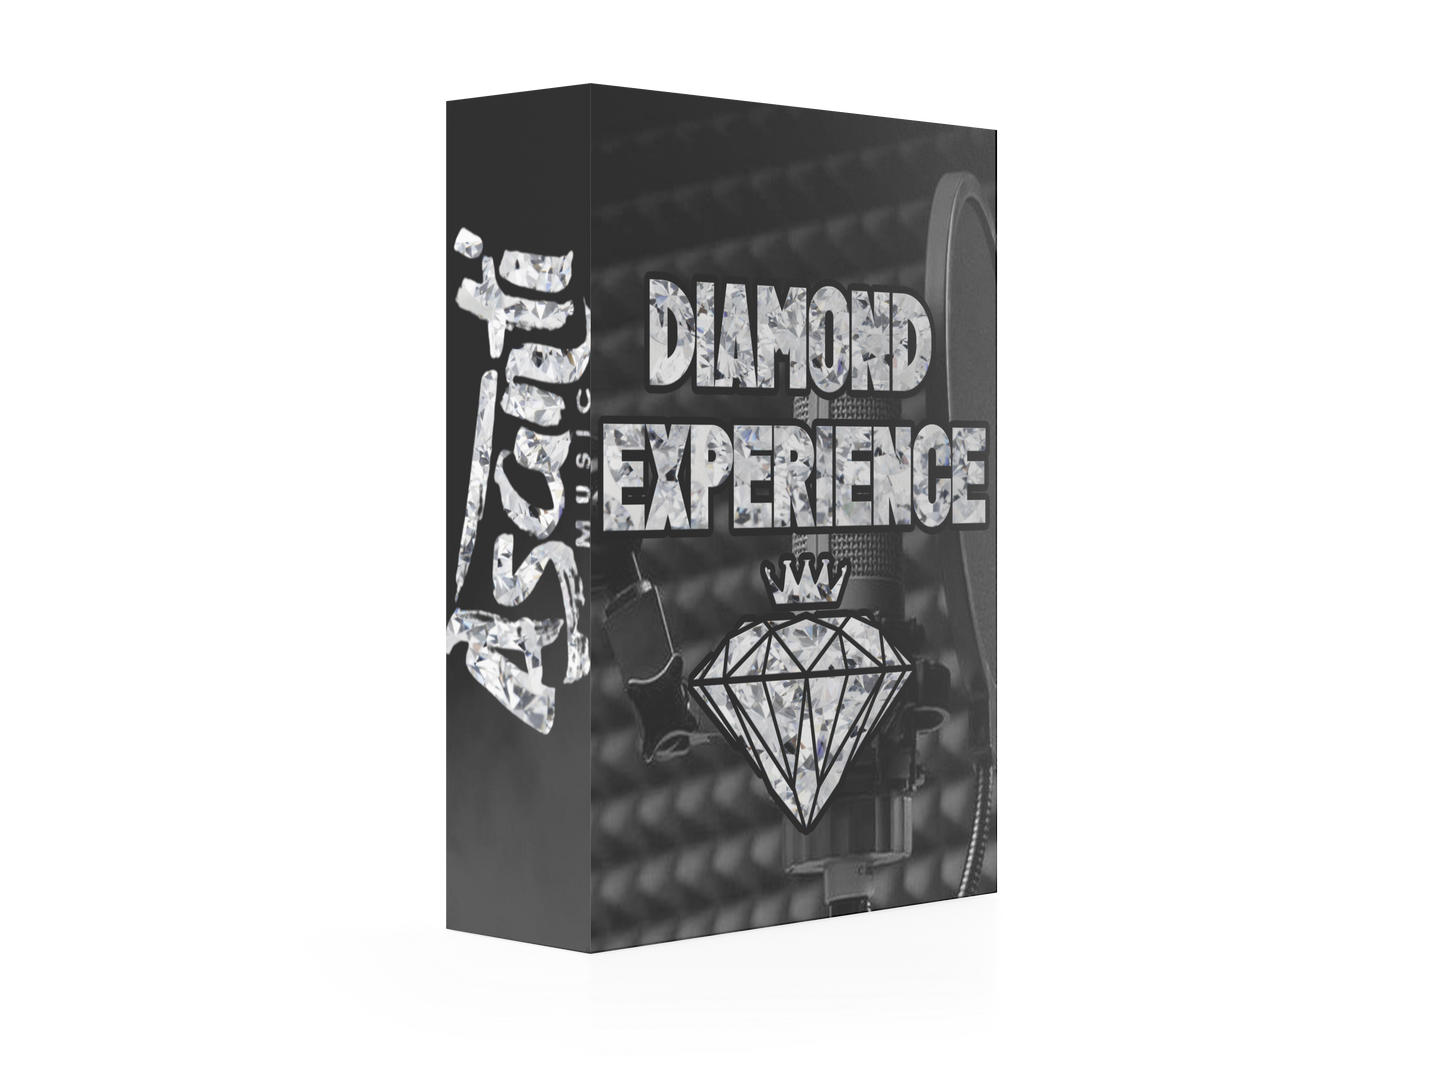 Diamond experience